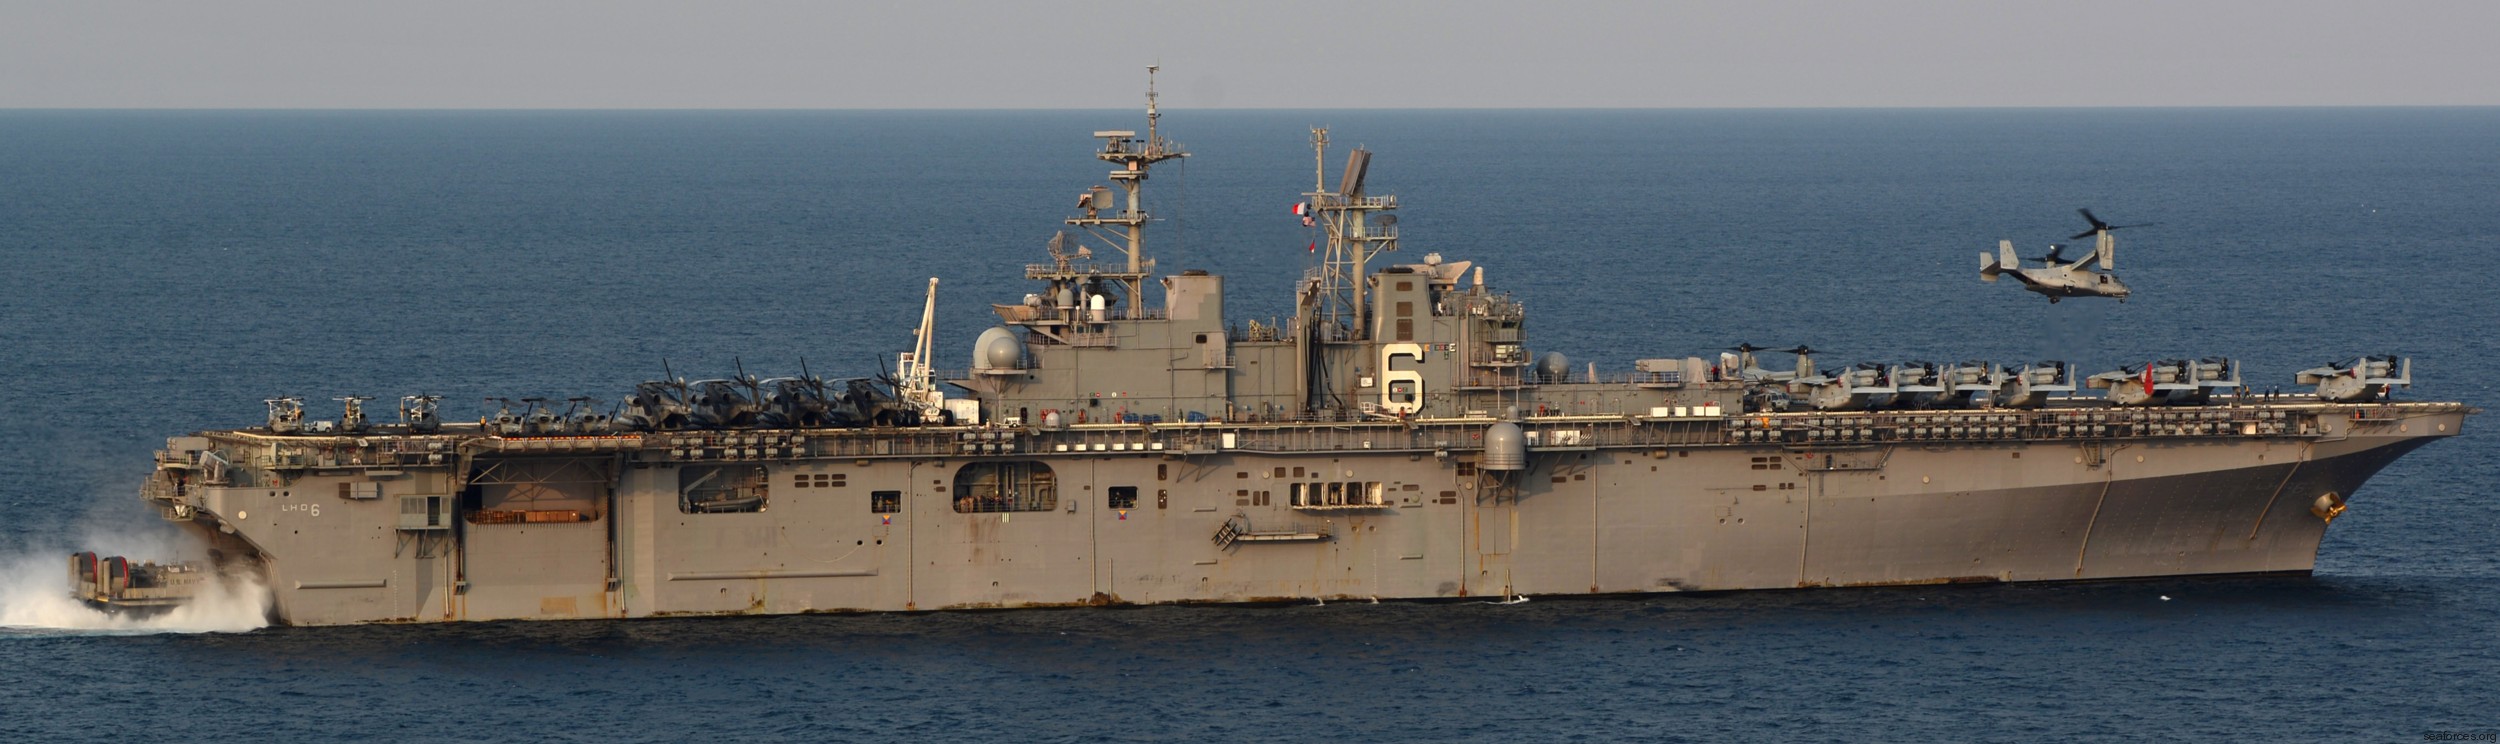 lhd-6 uss bonhomme richard amphibious assault ship landing helicopter dock wasp class 160